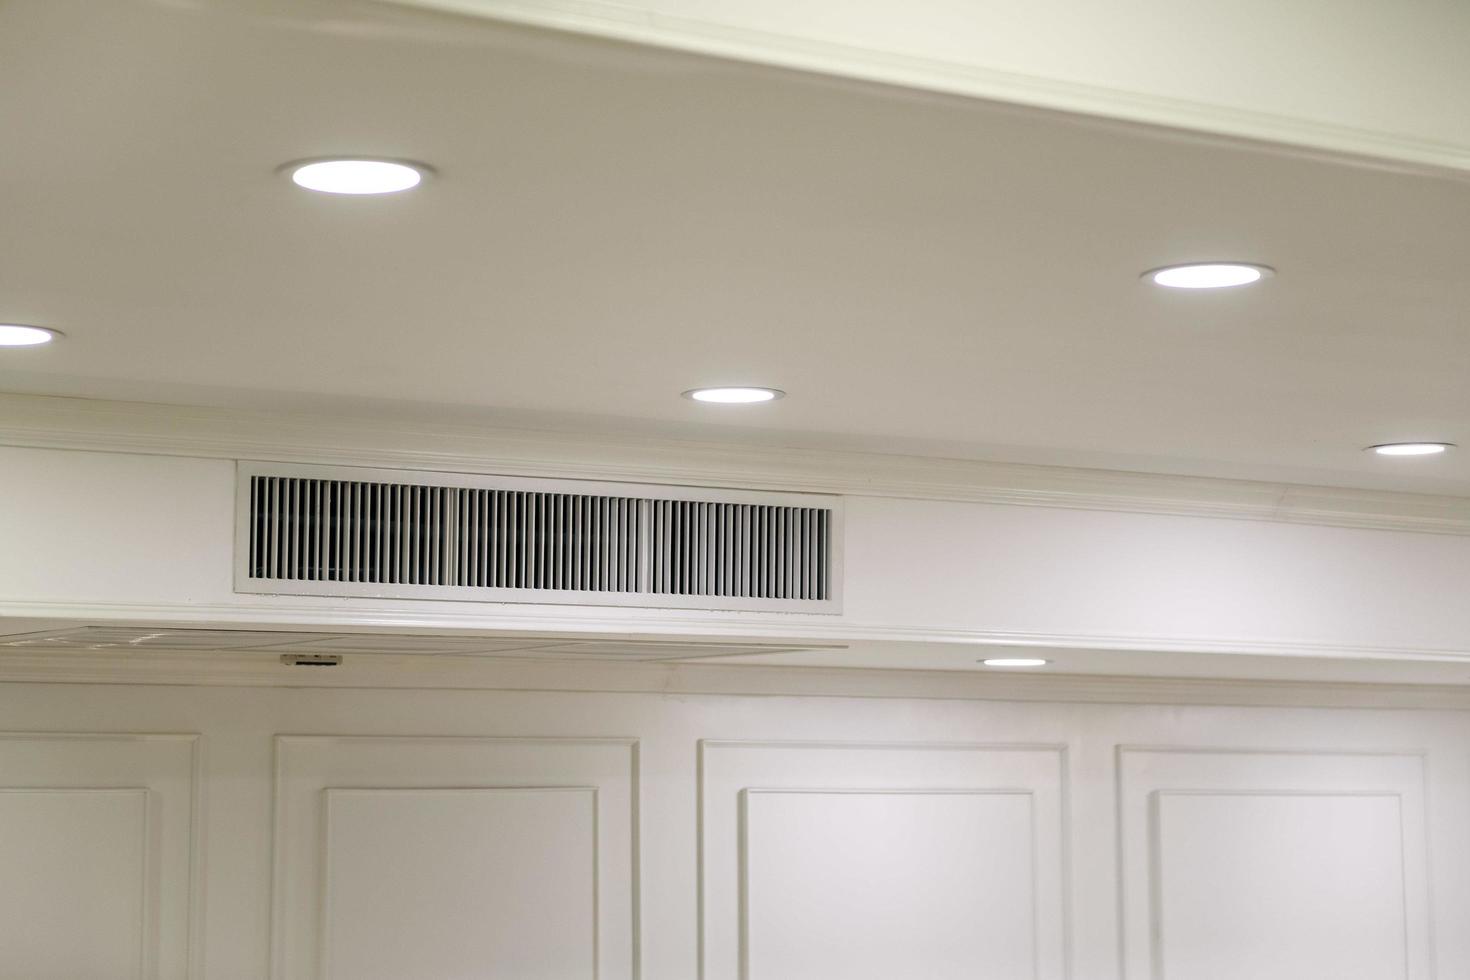 soffitto montato cassetta genere aria condizionatore e moderno lampada leggero su bianca soffitto. condotto aria condizionatore per casa o ufficio foto